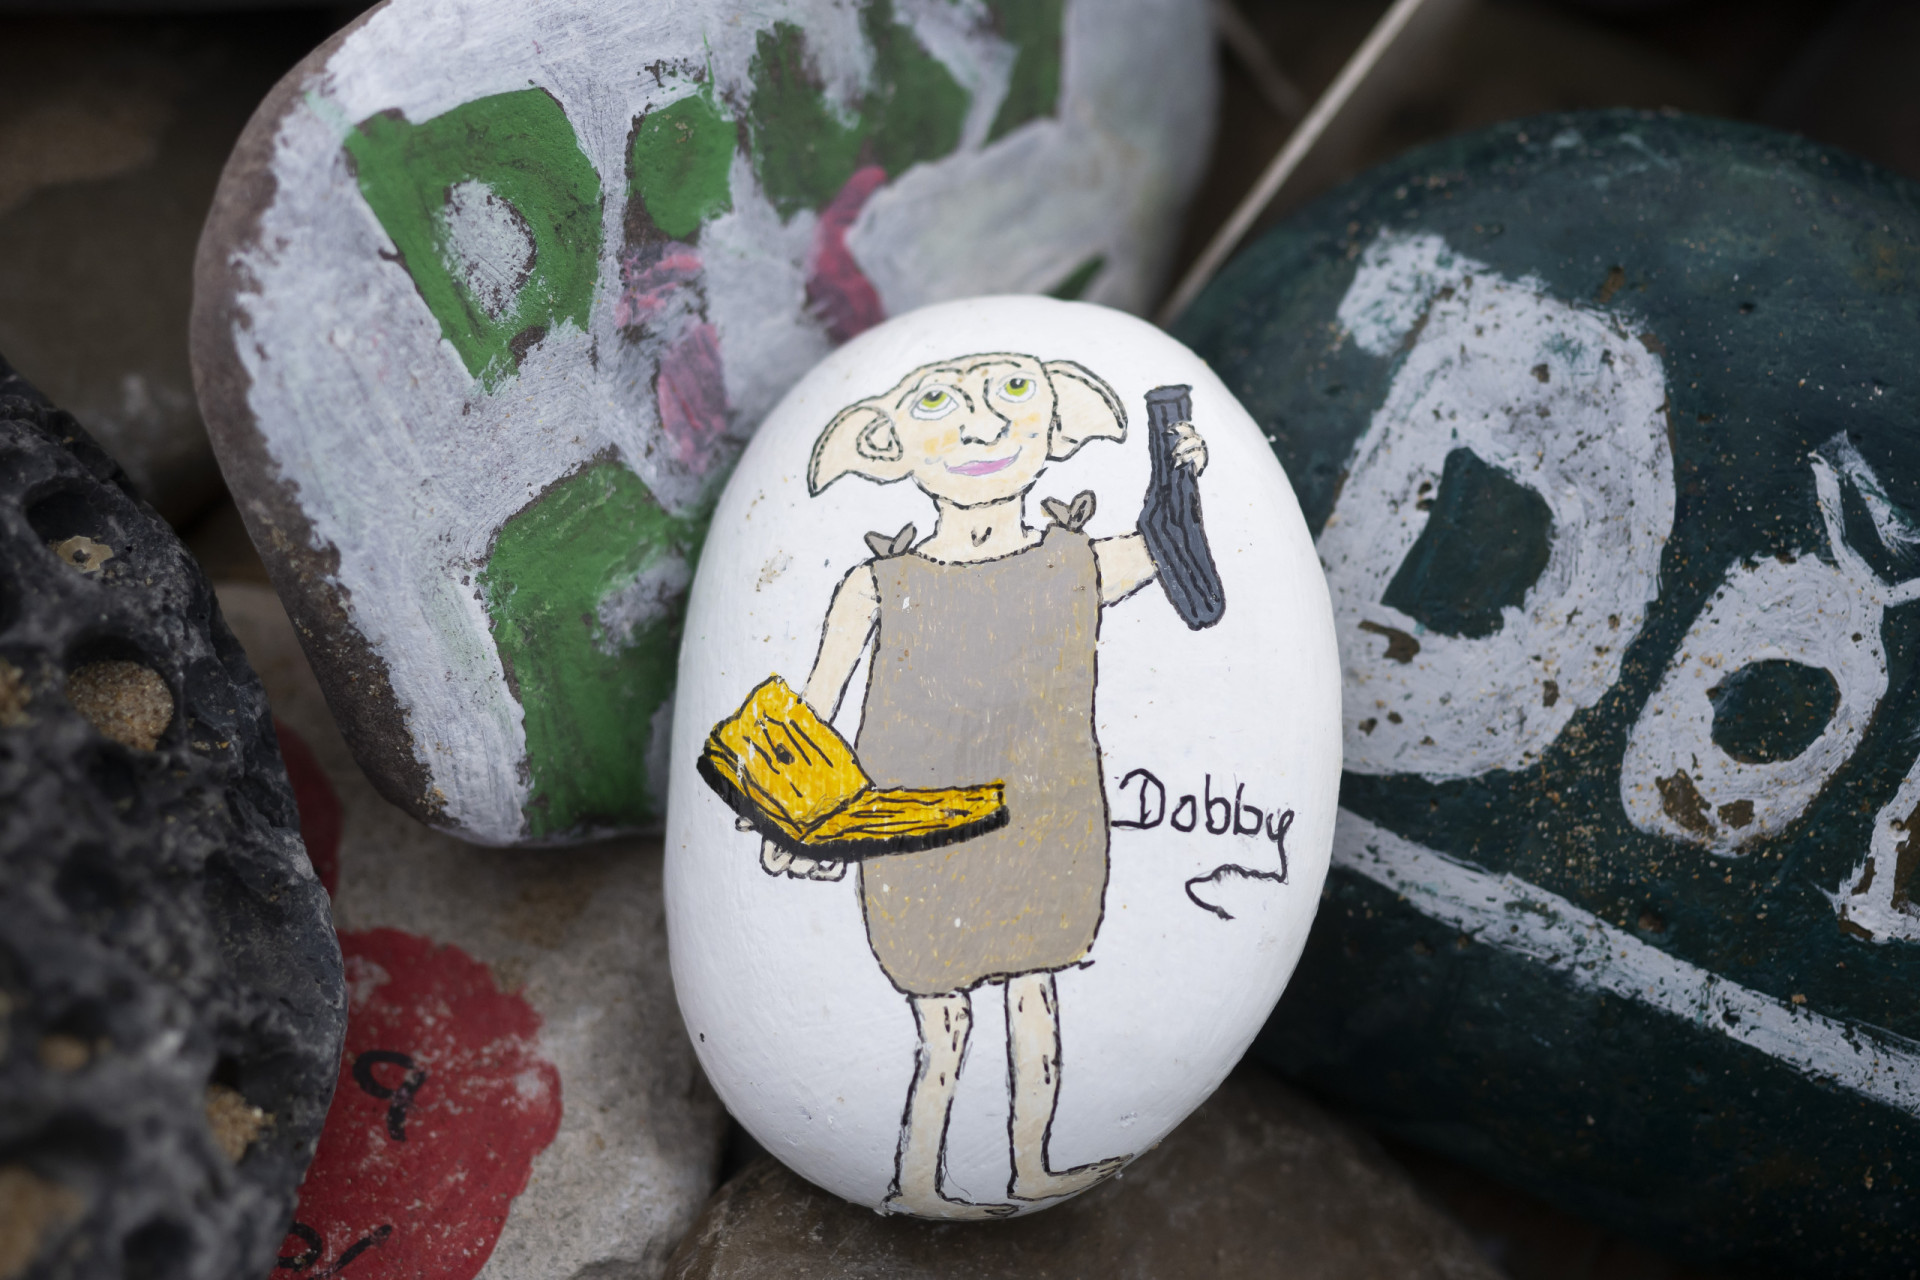 <p>Los fans de Harry Potter le erigieron una tumba al querido elfo doméstico Dobby en la playa Freswater West Beach de Pembrokeshire (Gales, Reino Unido), donde se rodó la muerte de este personaje. Los seguidores de la saga suelen acercarse a este lugar para dejarle una ofrenda significativa Dobby: un calcetín.</p>